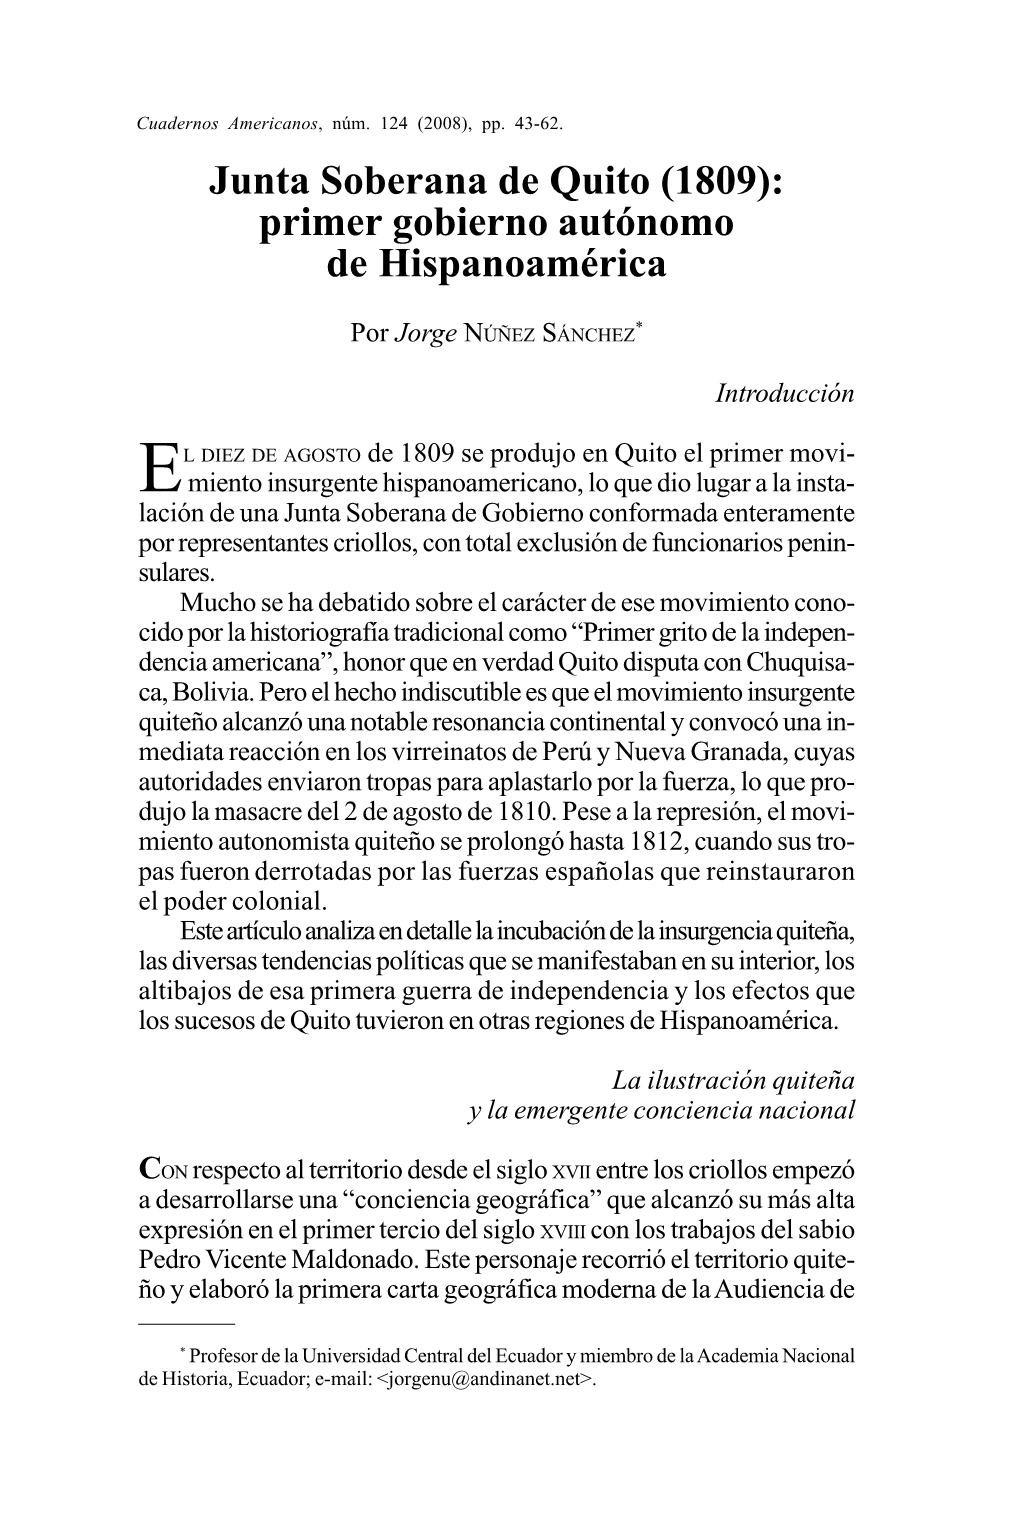 Junta Soberana De Quito (1809): Primer Gobierno Autónomo De Hispanoamérica